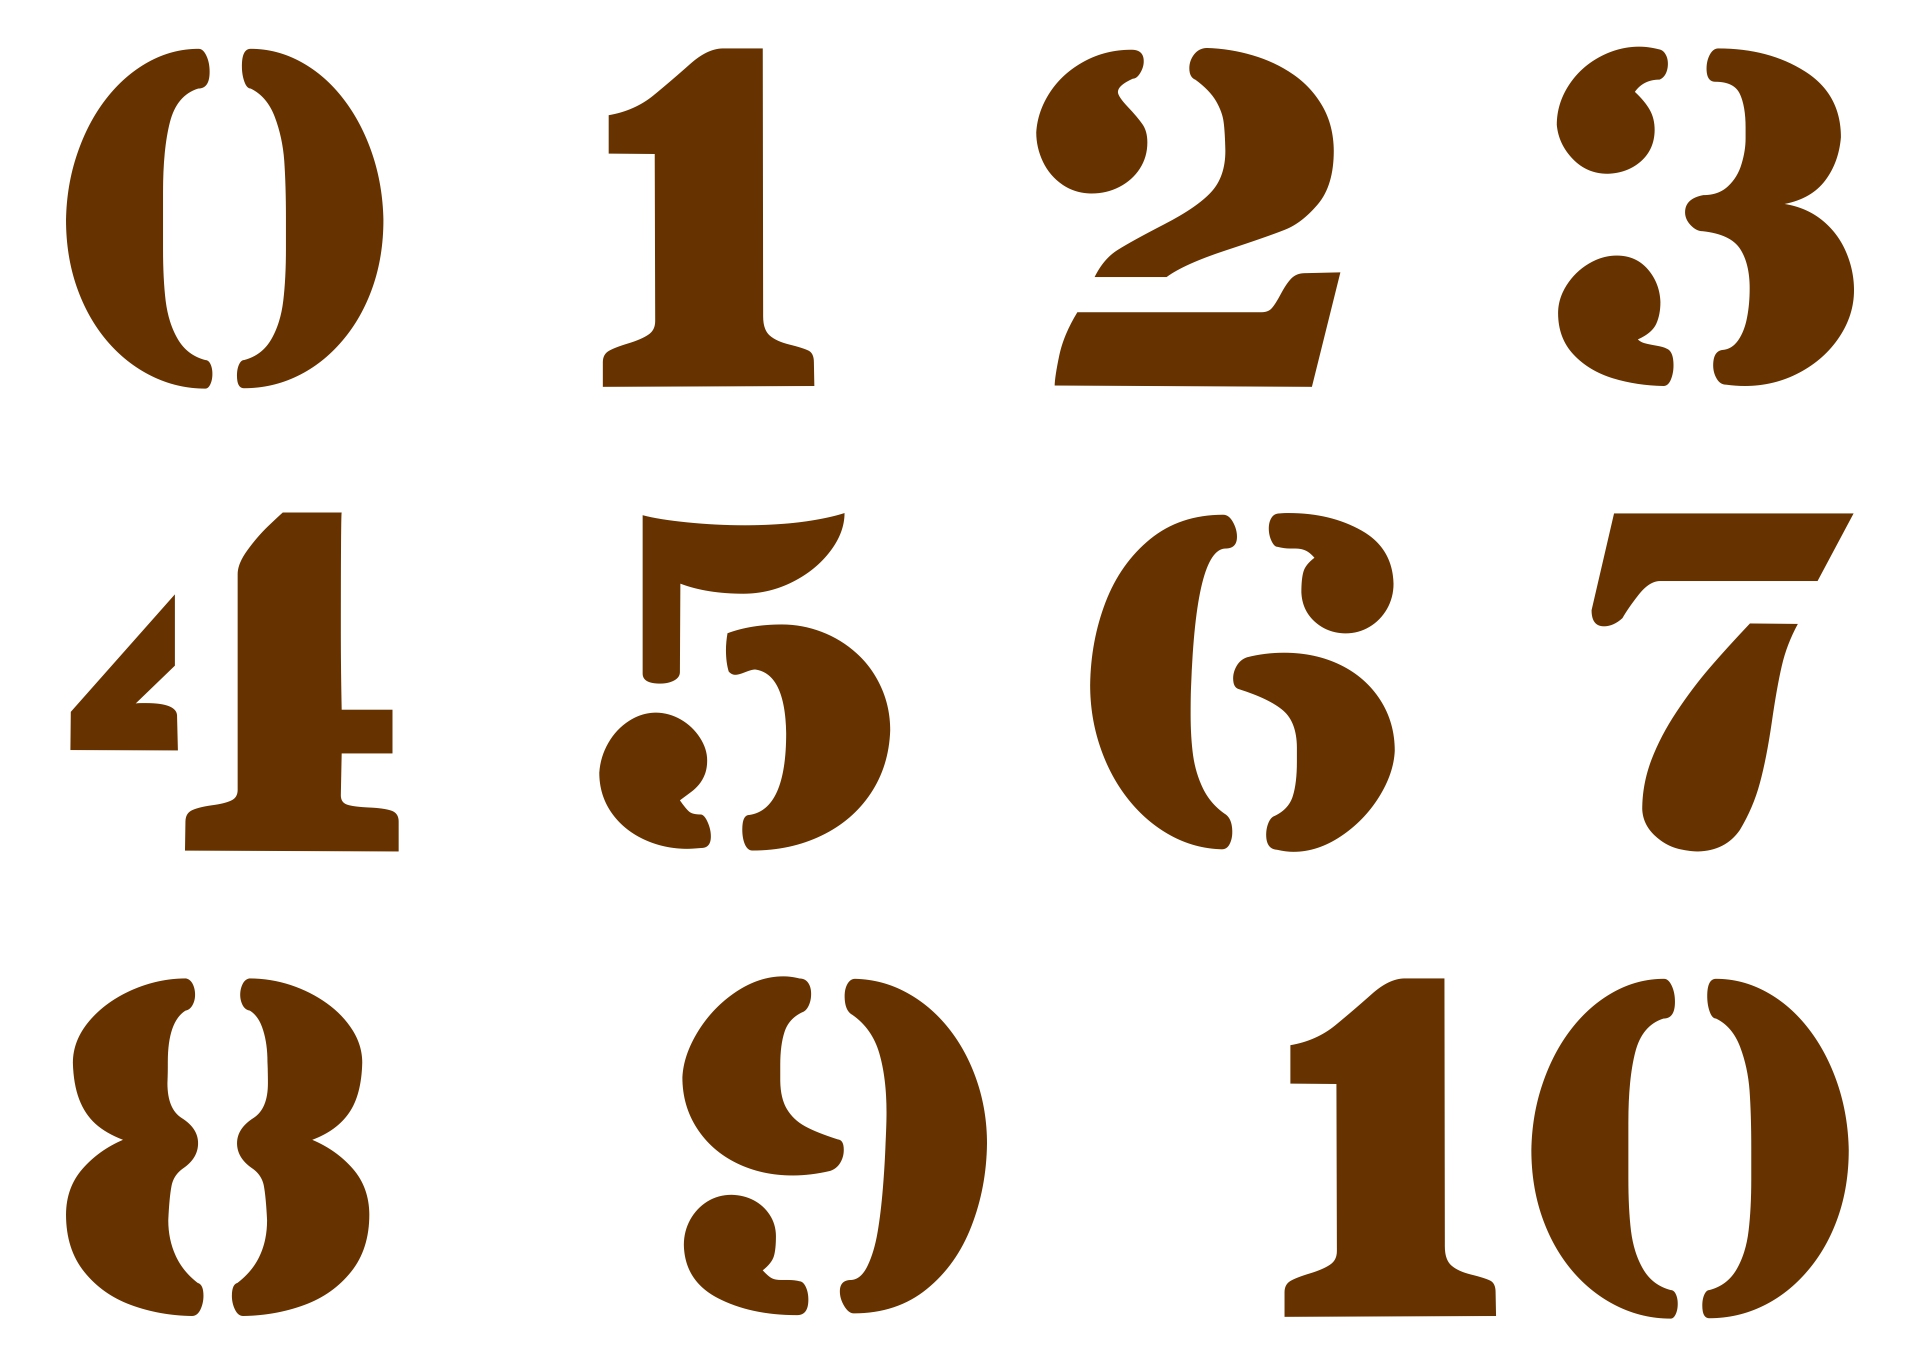 Printable Stencils Numbers